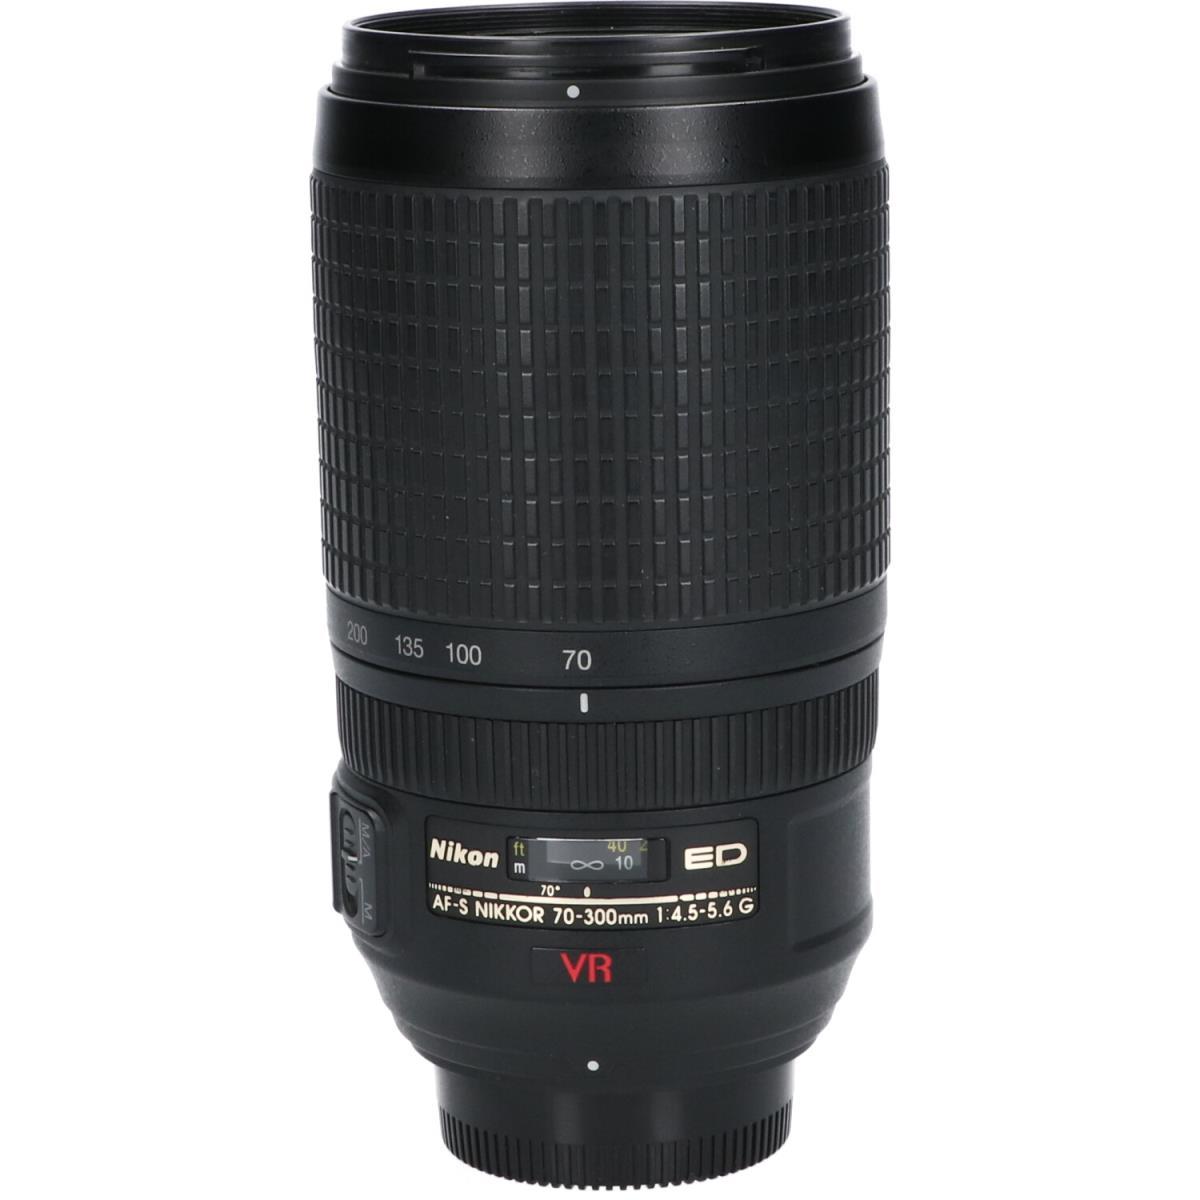 Nikon 70-300mm f/4.5-5.6 G ED VR Lens